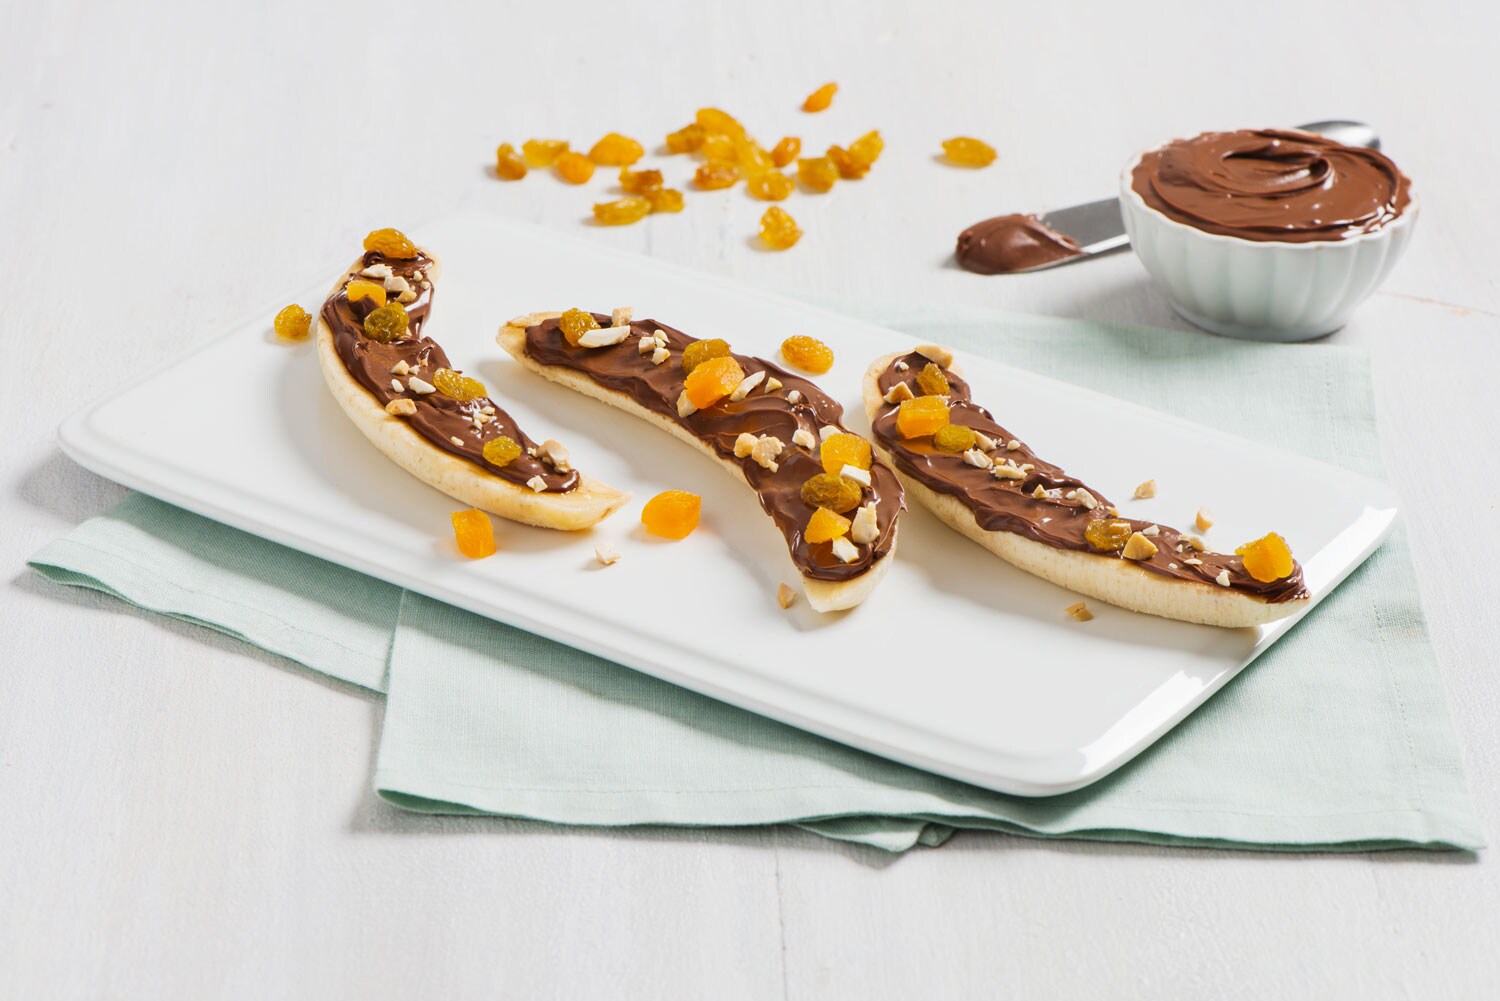 Split Banana Breakfast Boats with Nutella® hazelnut spread